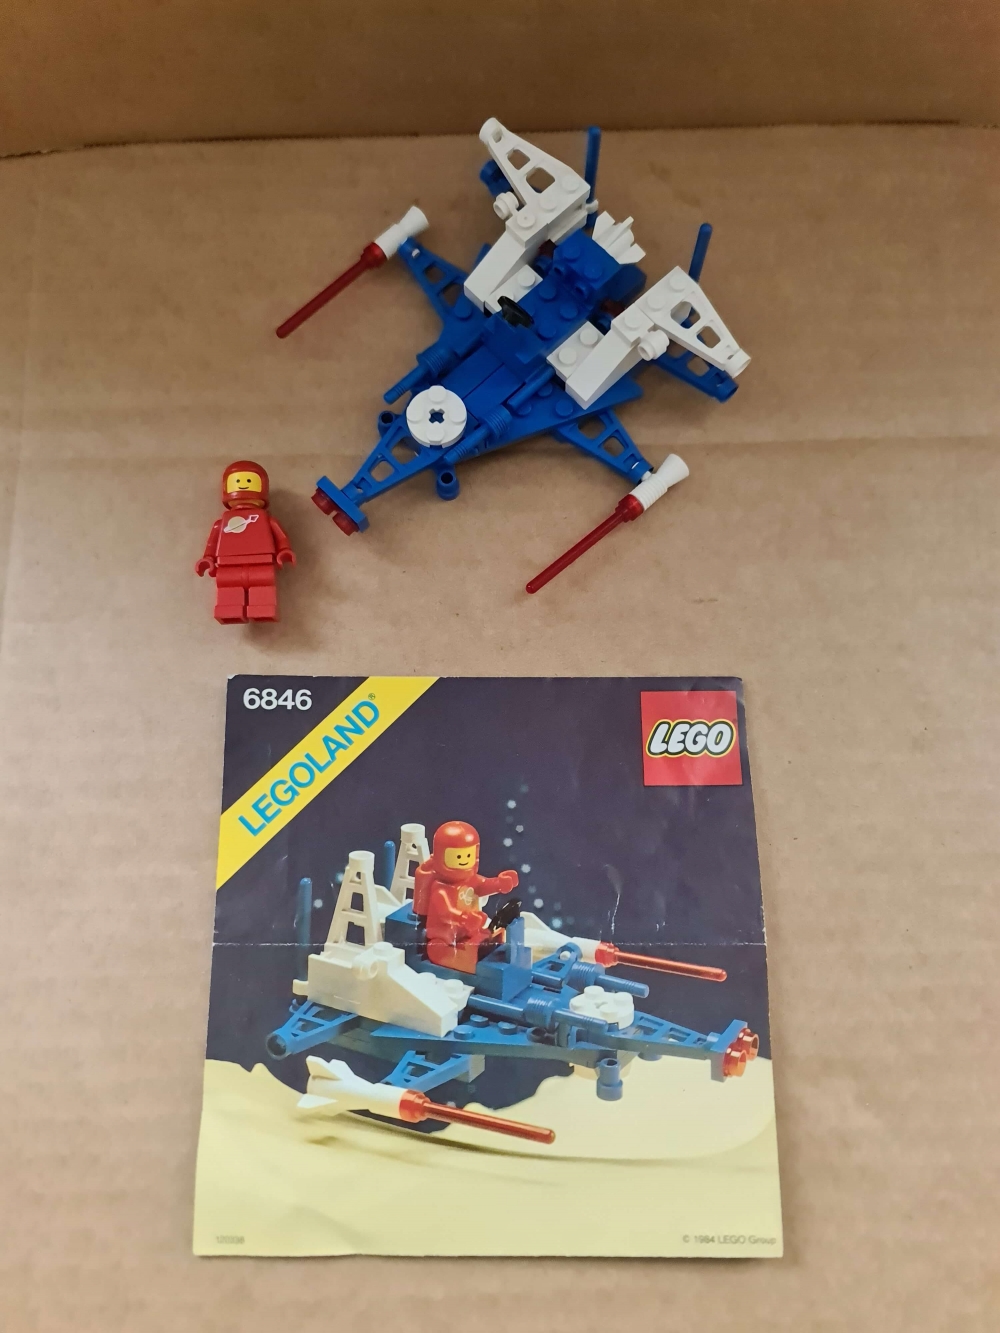 Sett 6846 fra Lego Classic Space serien
Meget pent. Komplett med manual.